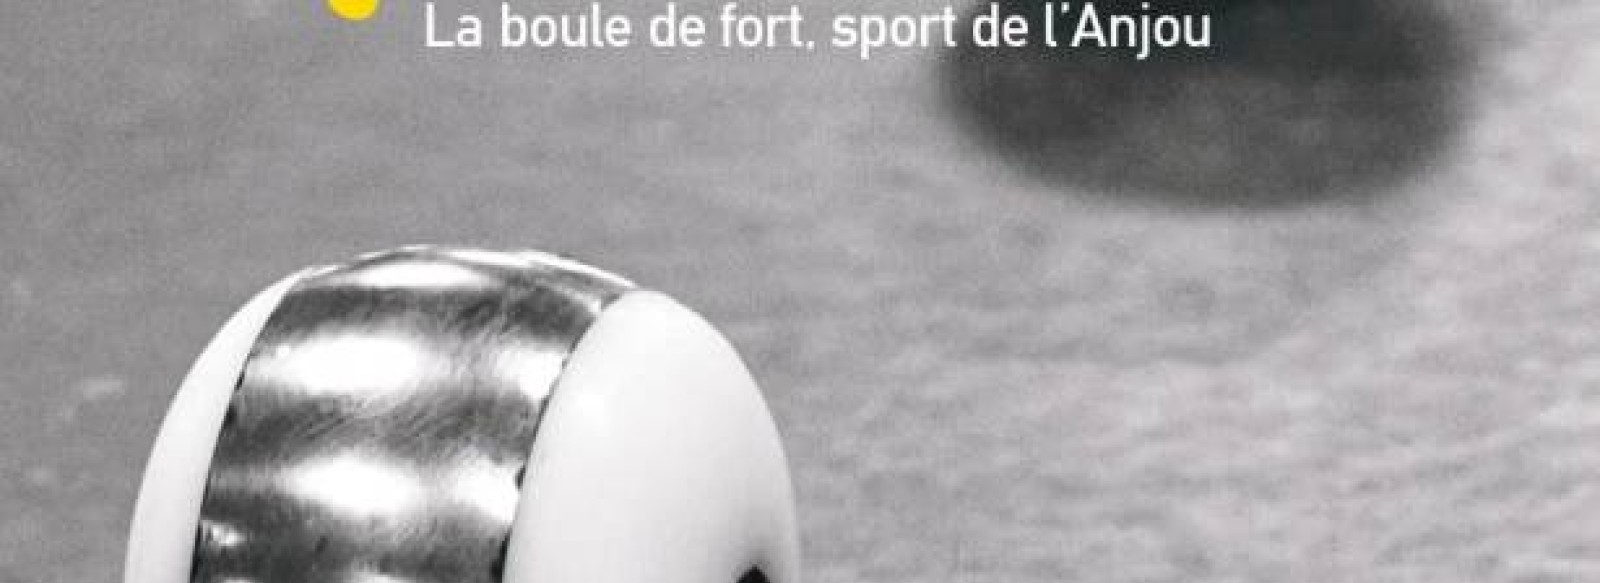 EXPOSITION << CA ROULE ! LA BOULE DE FORT, SPORT DE L'ANJOU >> A BAUGE